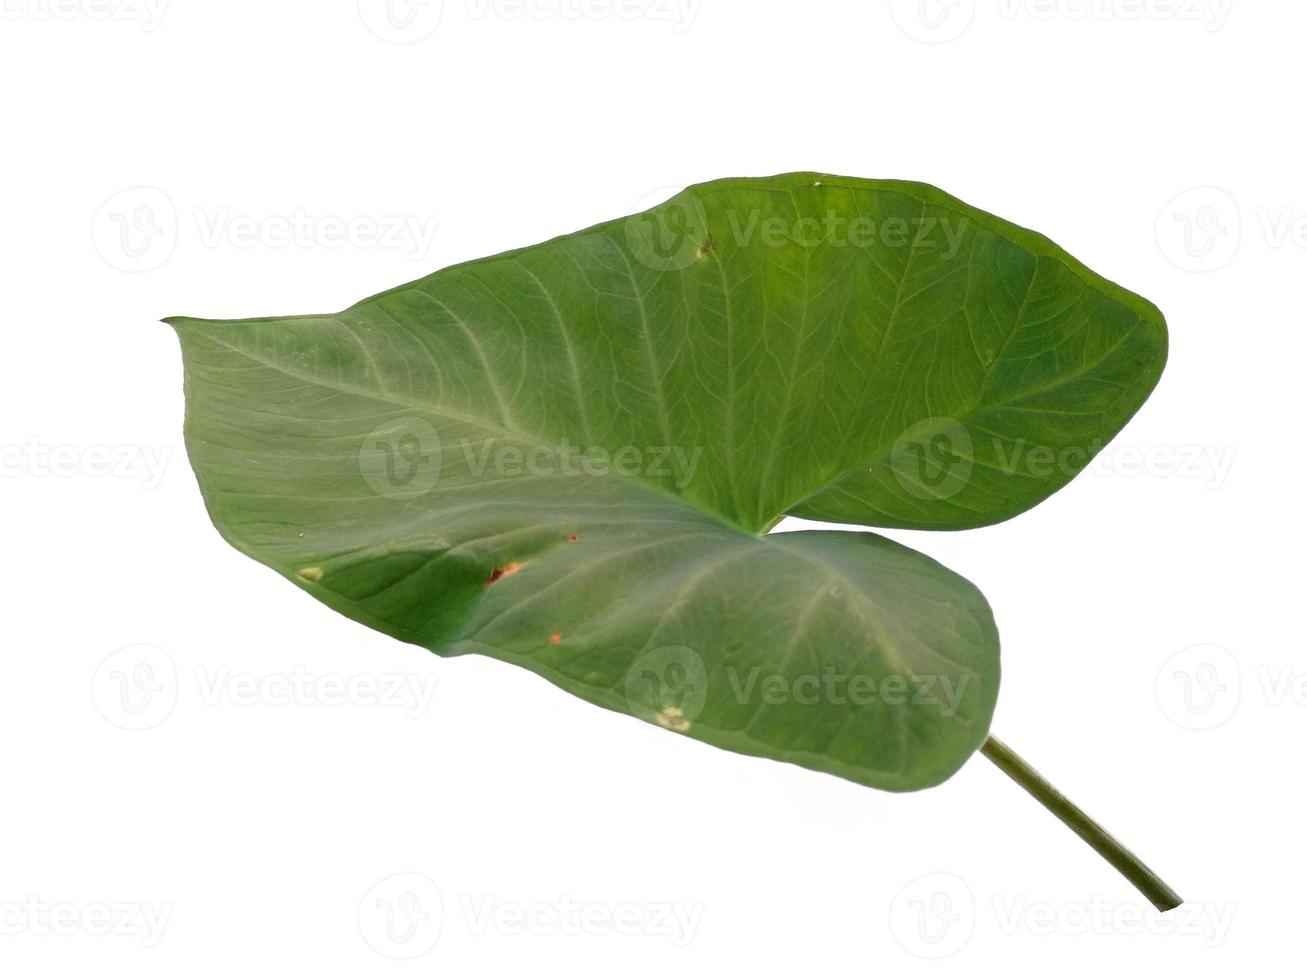 eddoe blad eller vilda taro blad på vit bakgrund foto